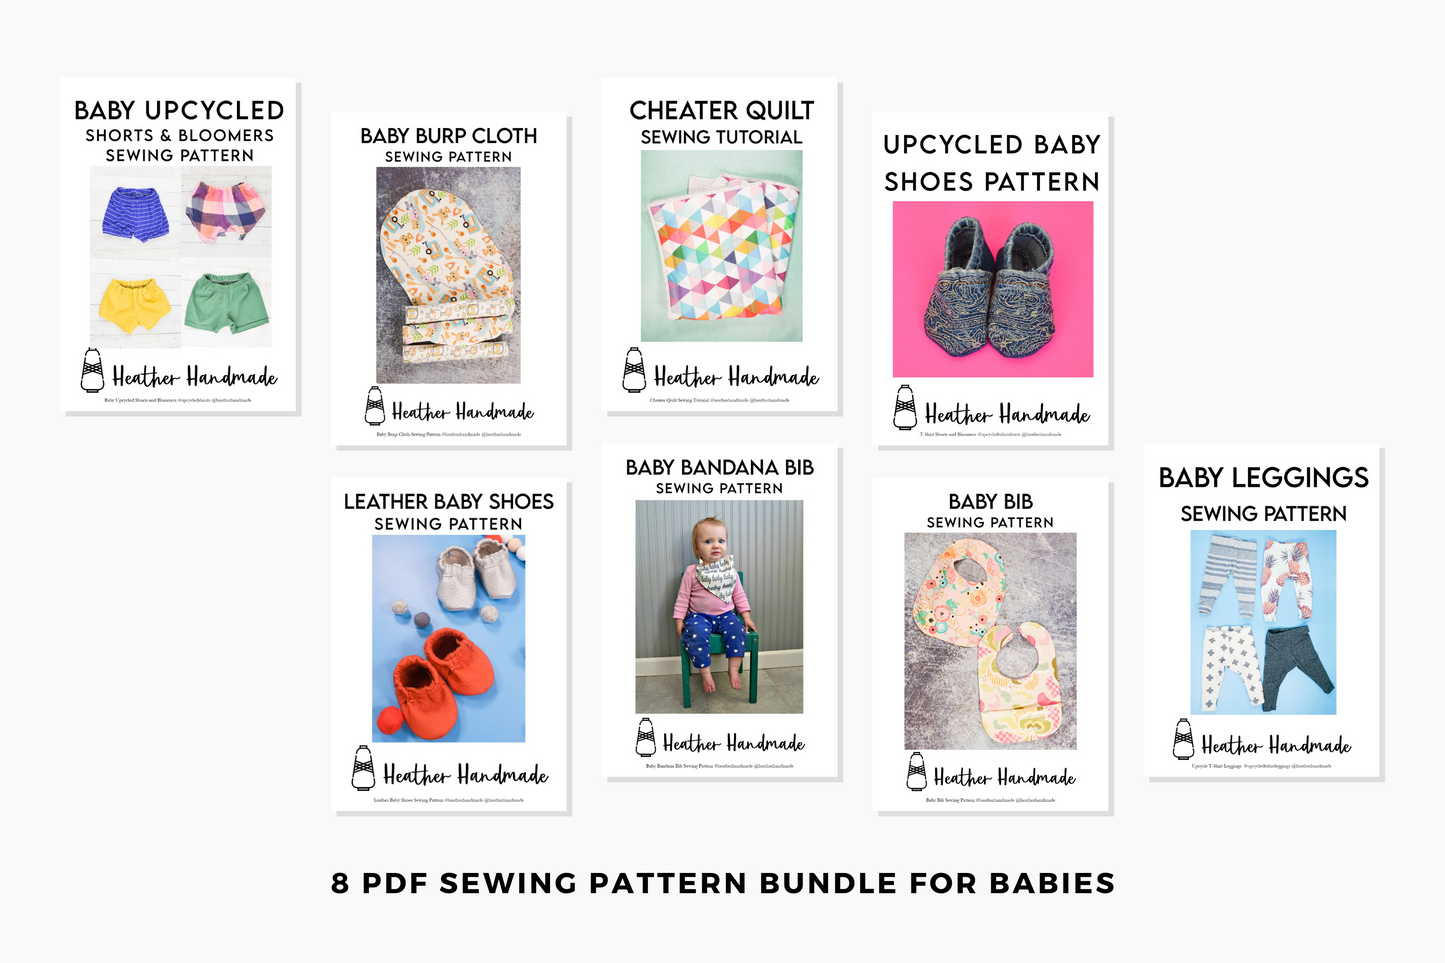 Baby Sewing Patterns Bundle